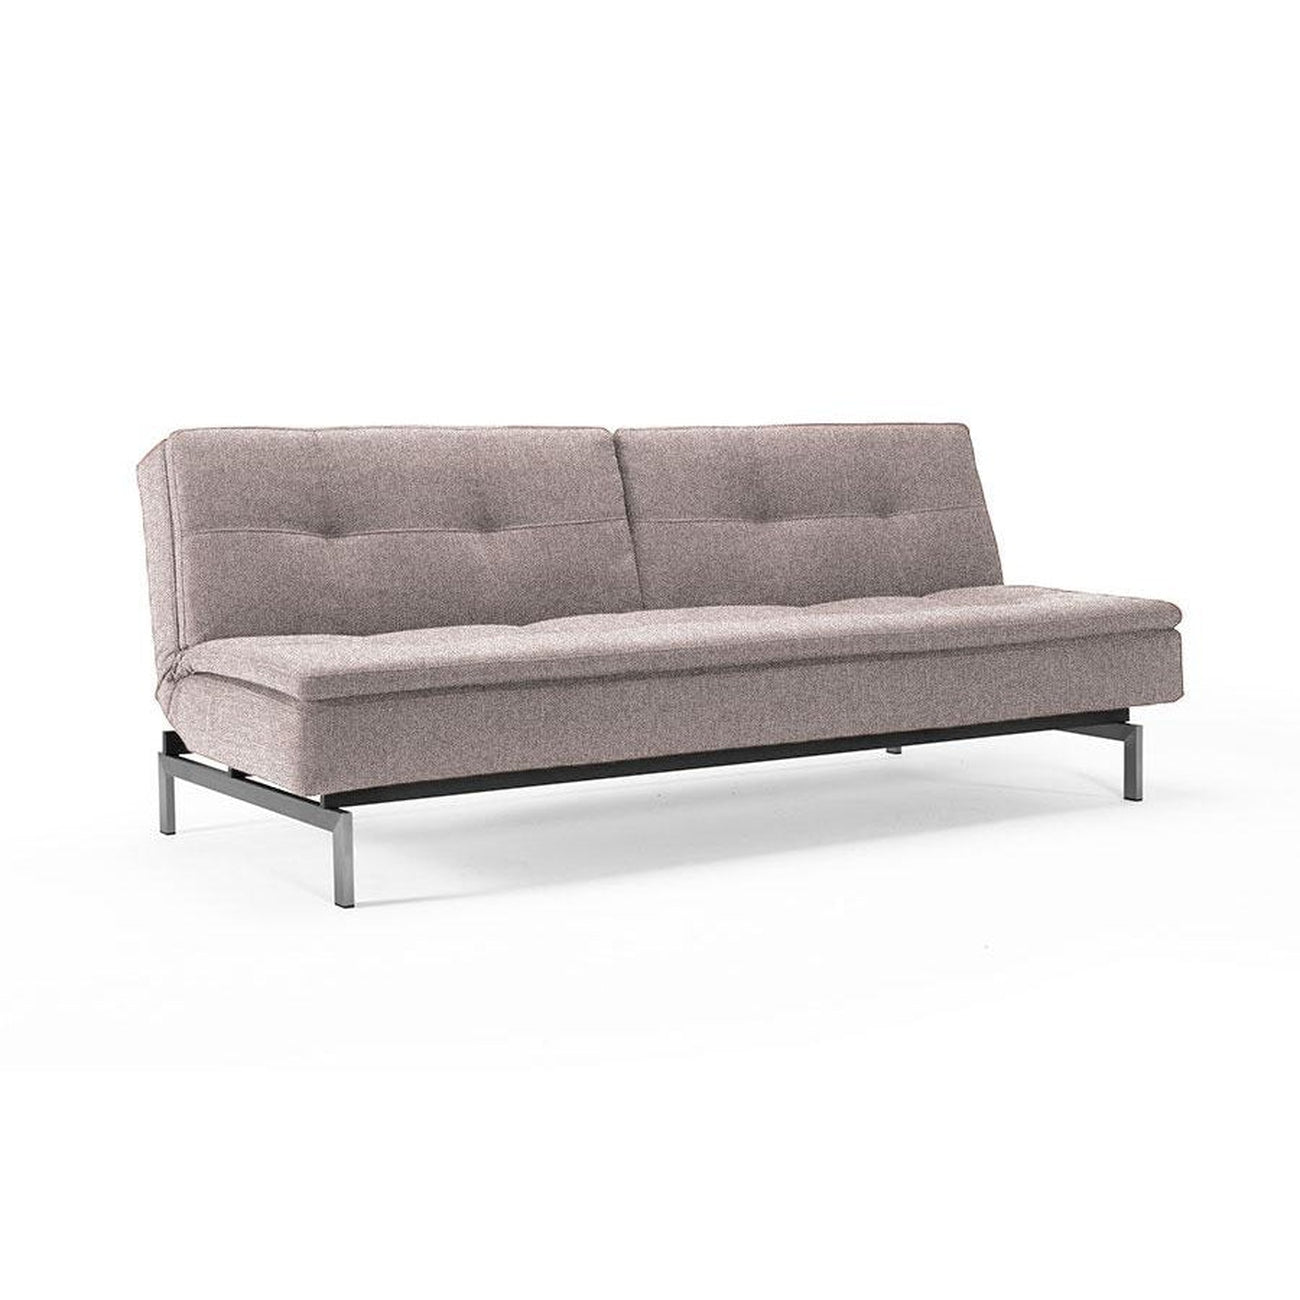 Dublexo Deluxe Sofa,STAINLESS STEEL-Innovation Living-INNO-94-741050521-8-2-SofasGrey-10-France and Son